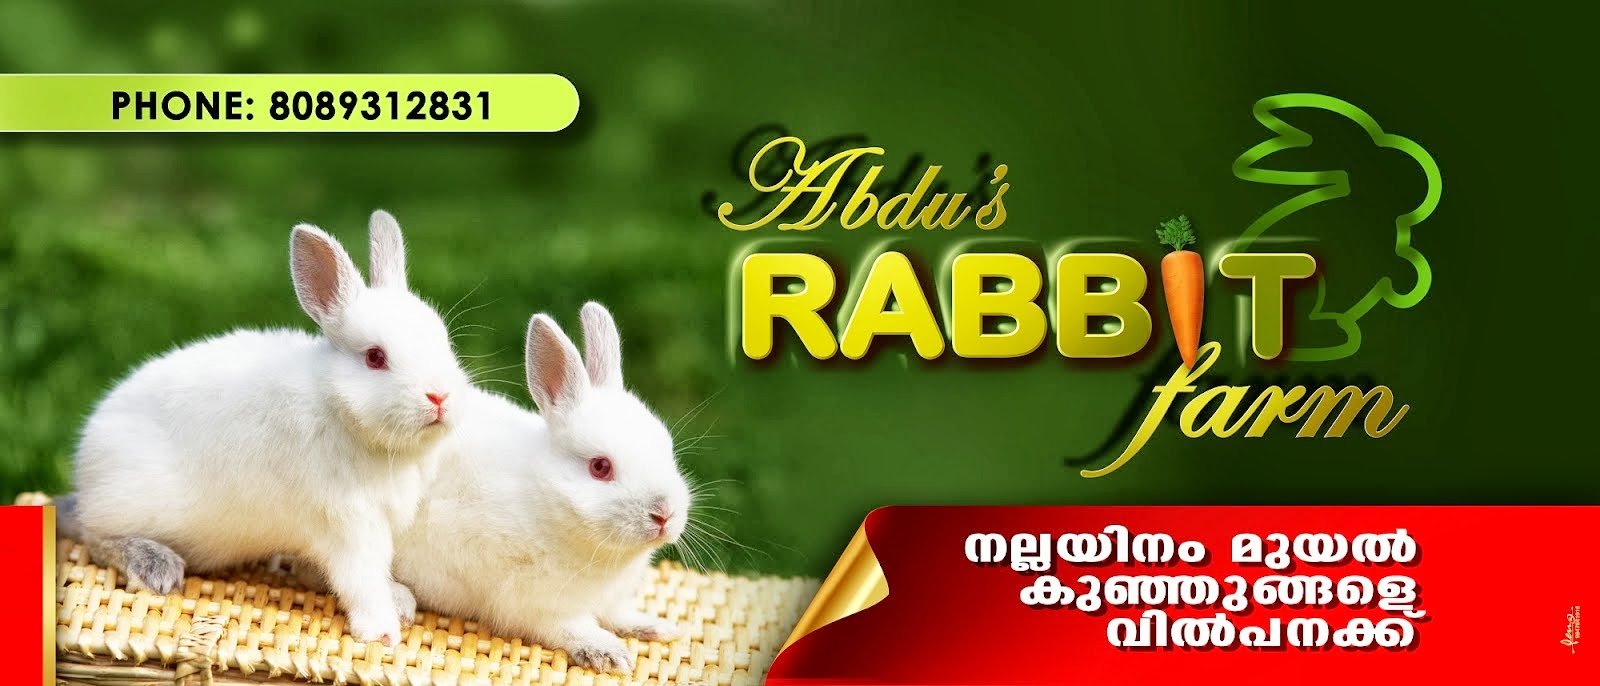 abdu's rabbit farm